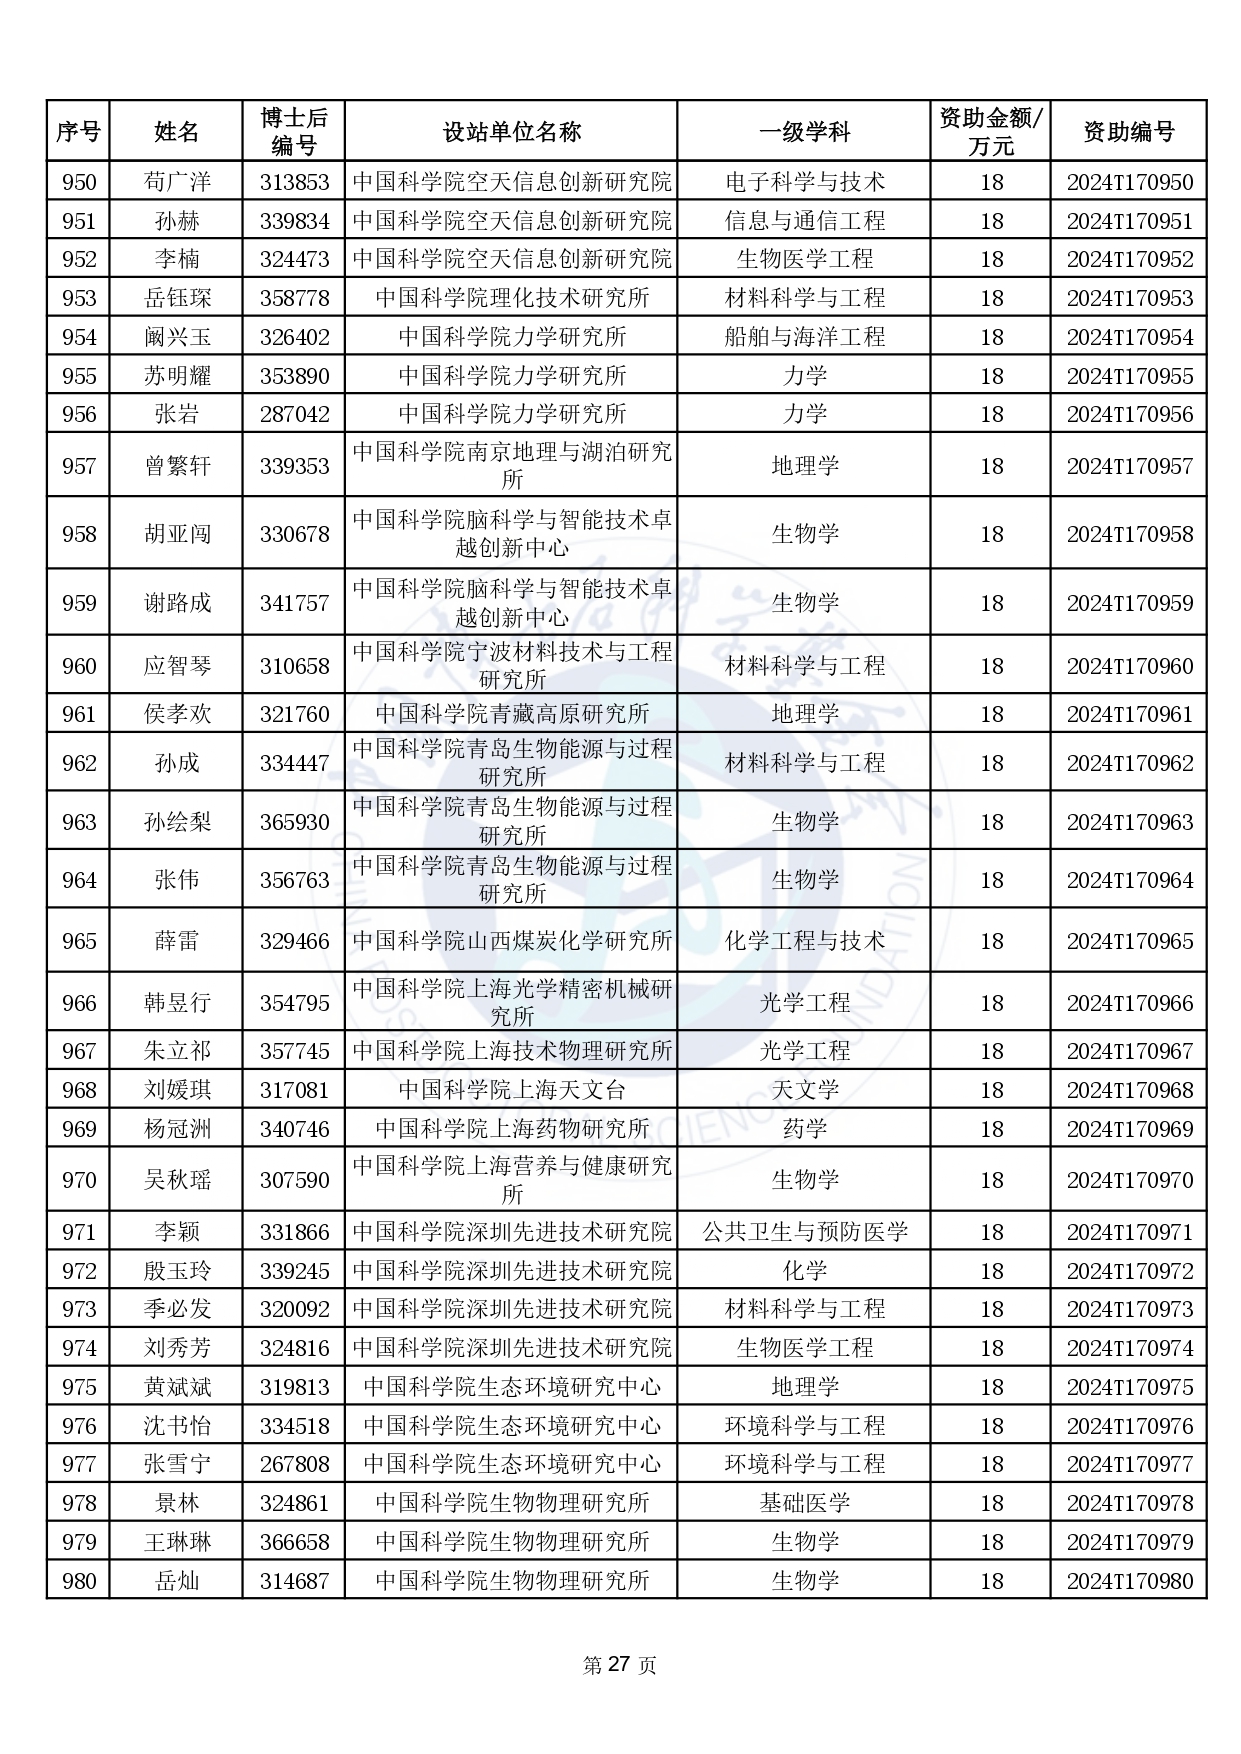 中国博士后科学基金第17批特别资助获资助人员名单(部分获资助人员略)